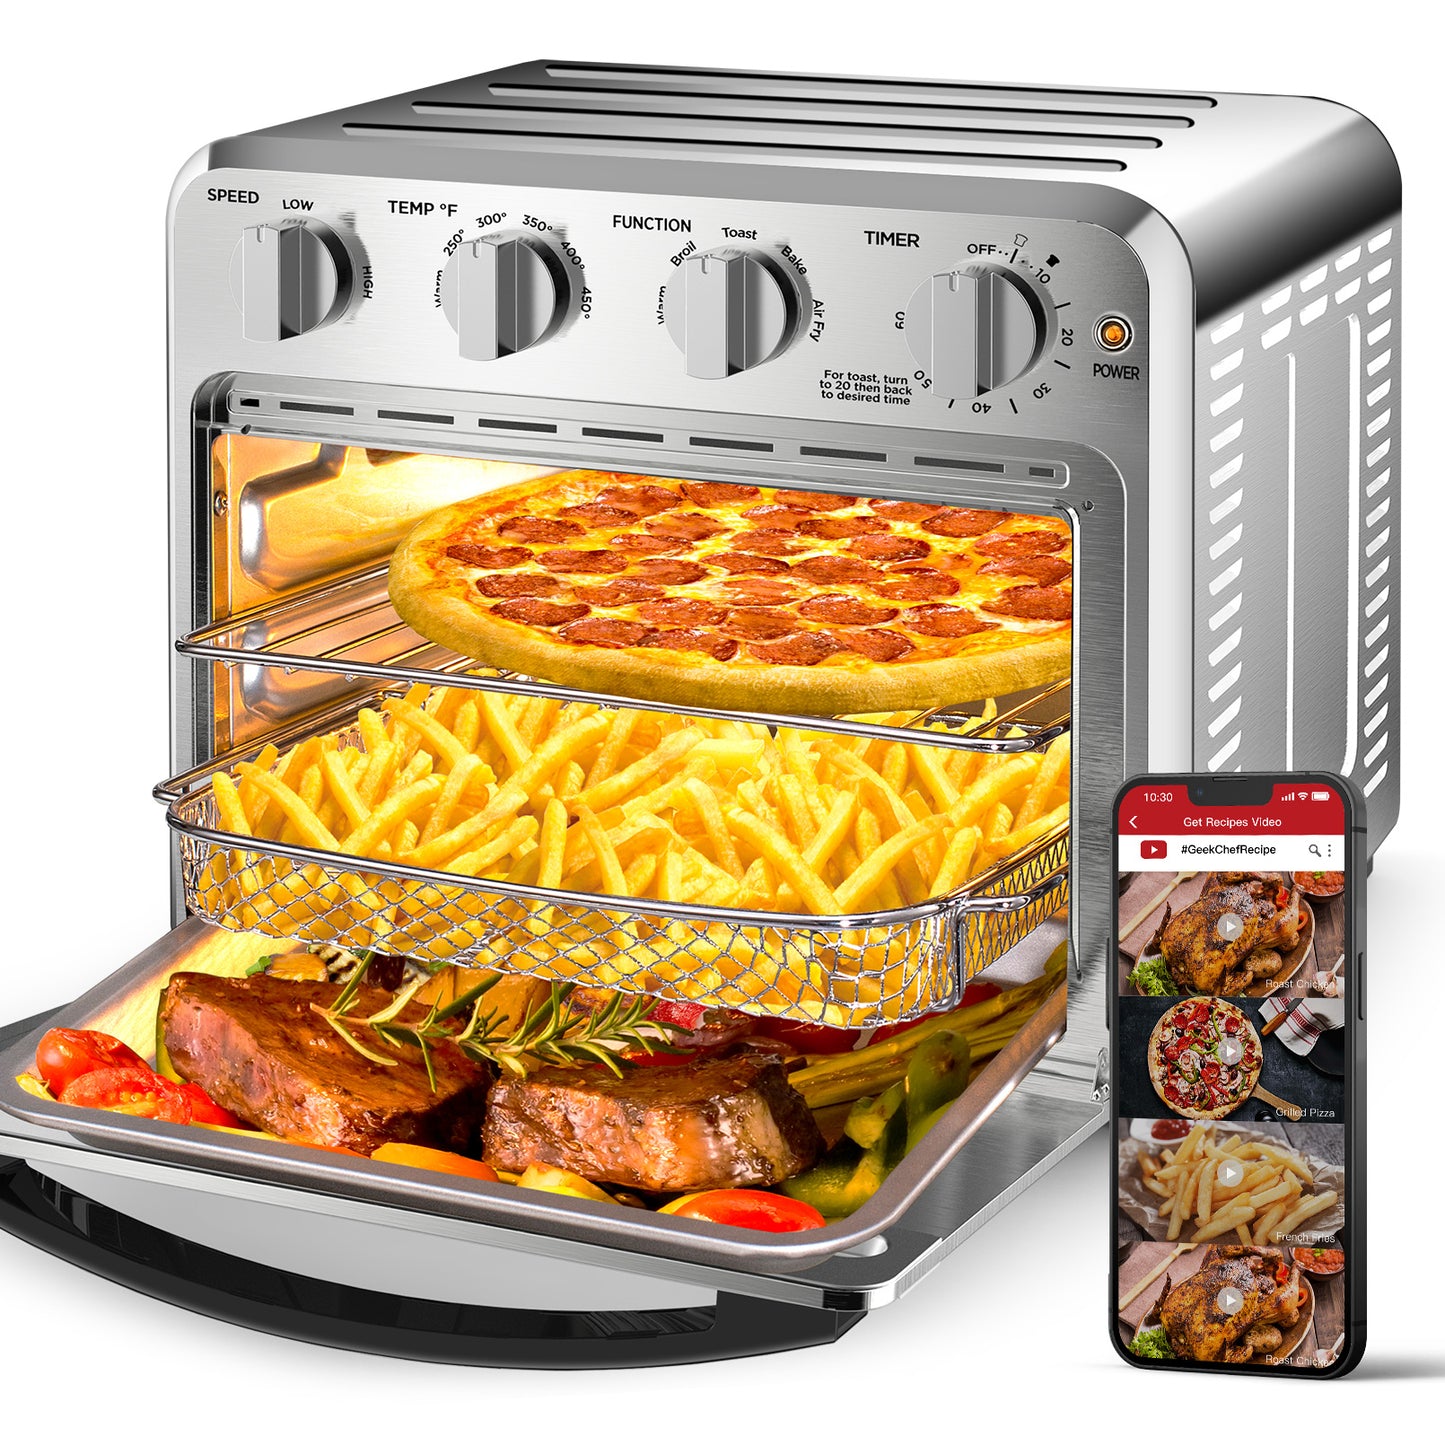  Chefman Air Fryer Toaster Oven, 6 Slice, 26 QT